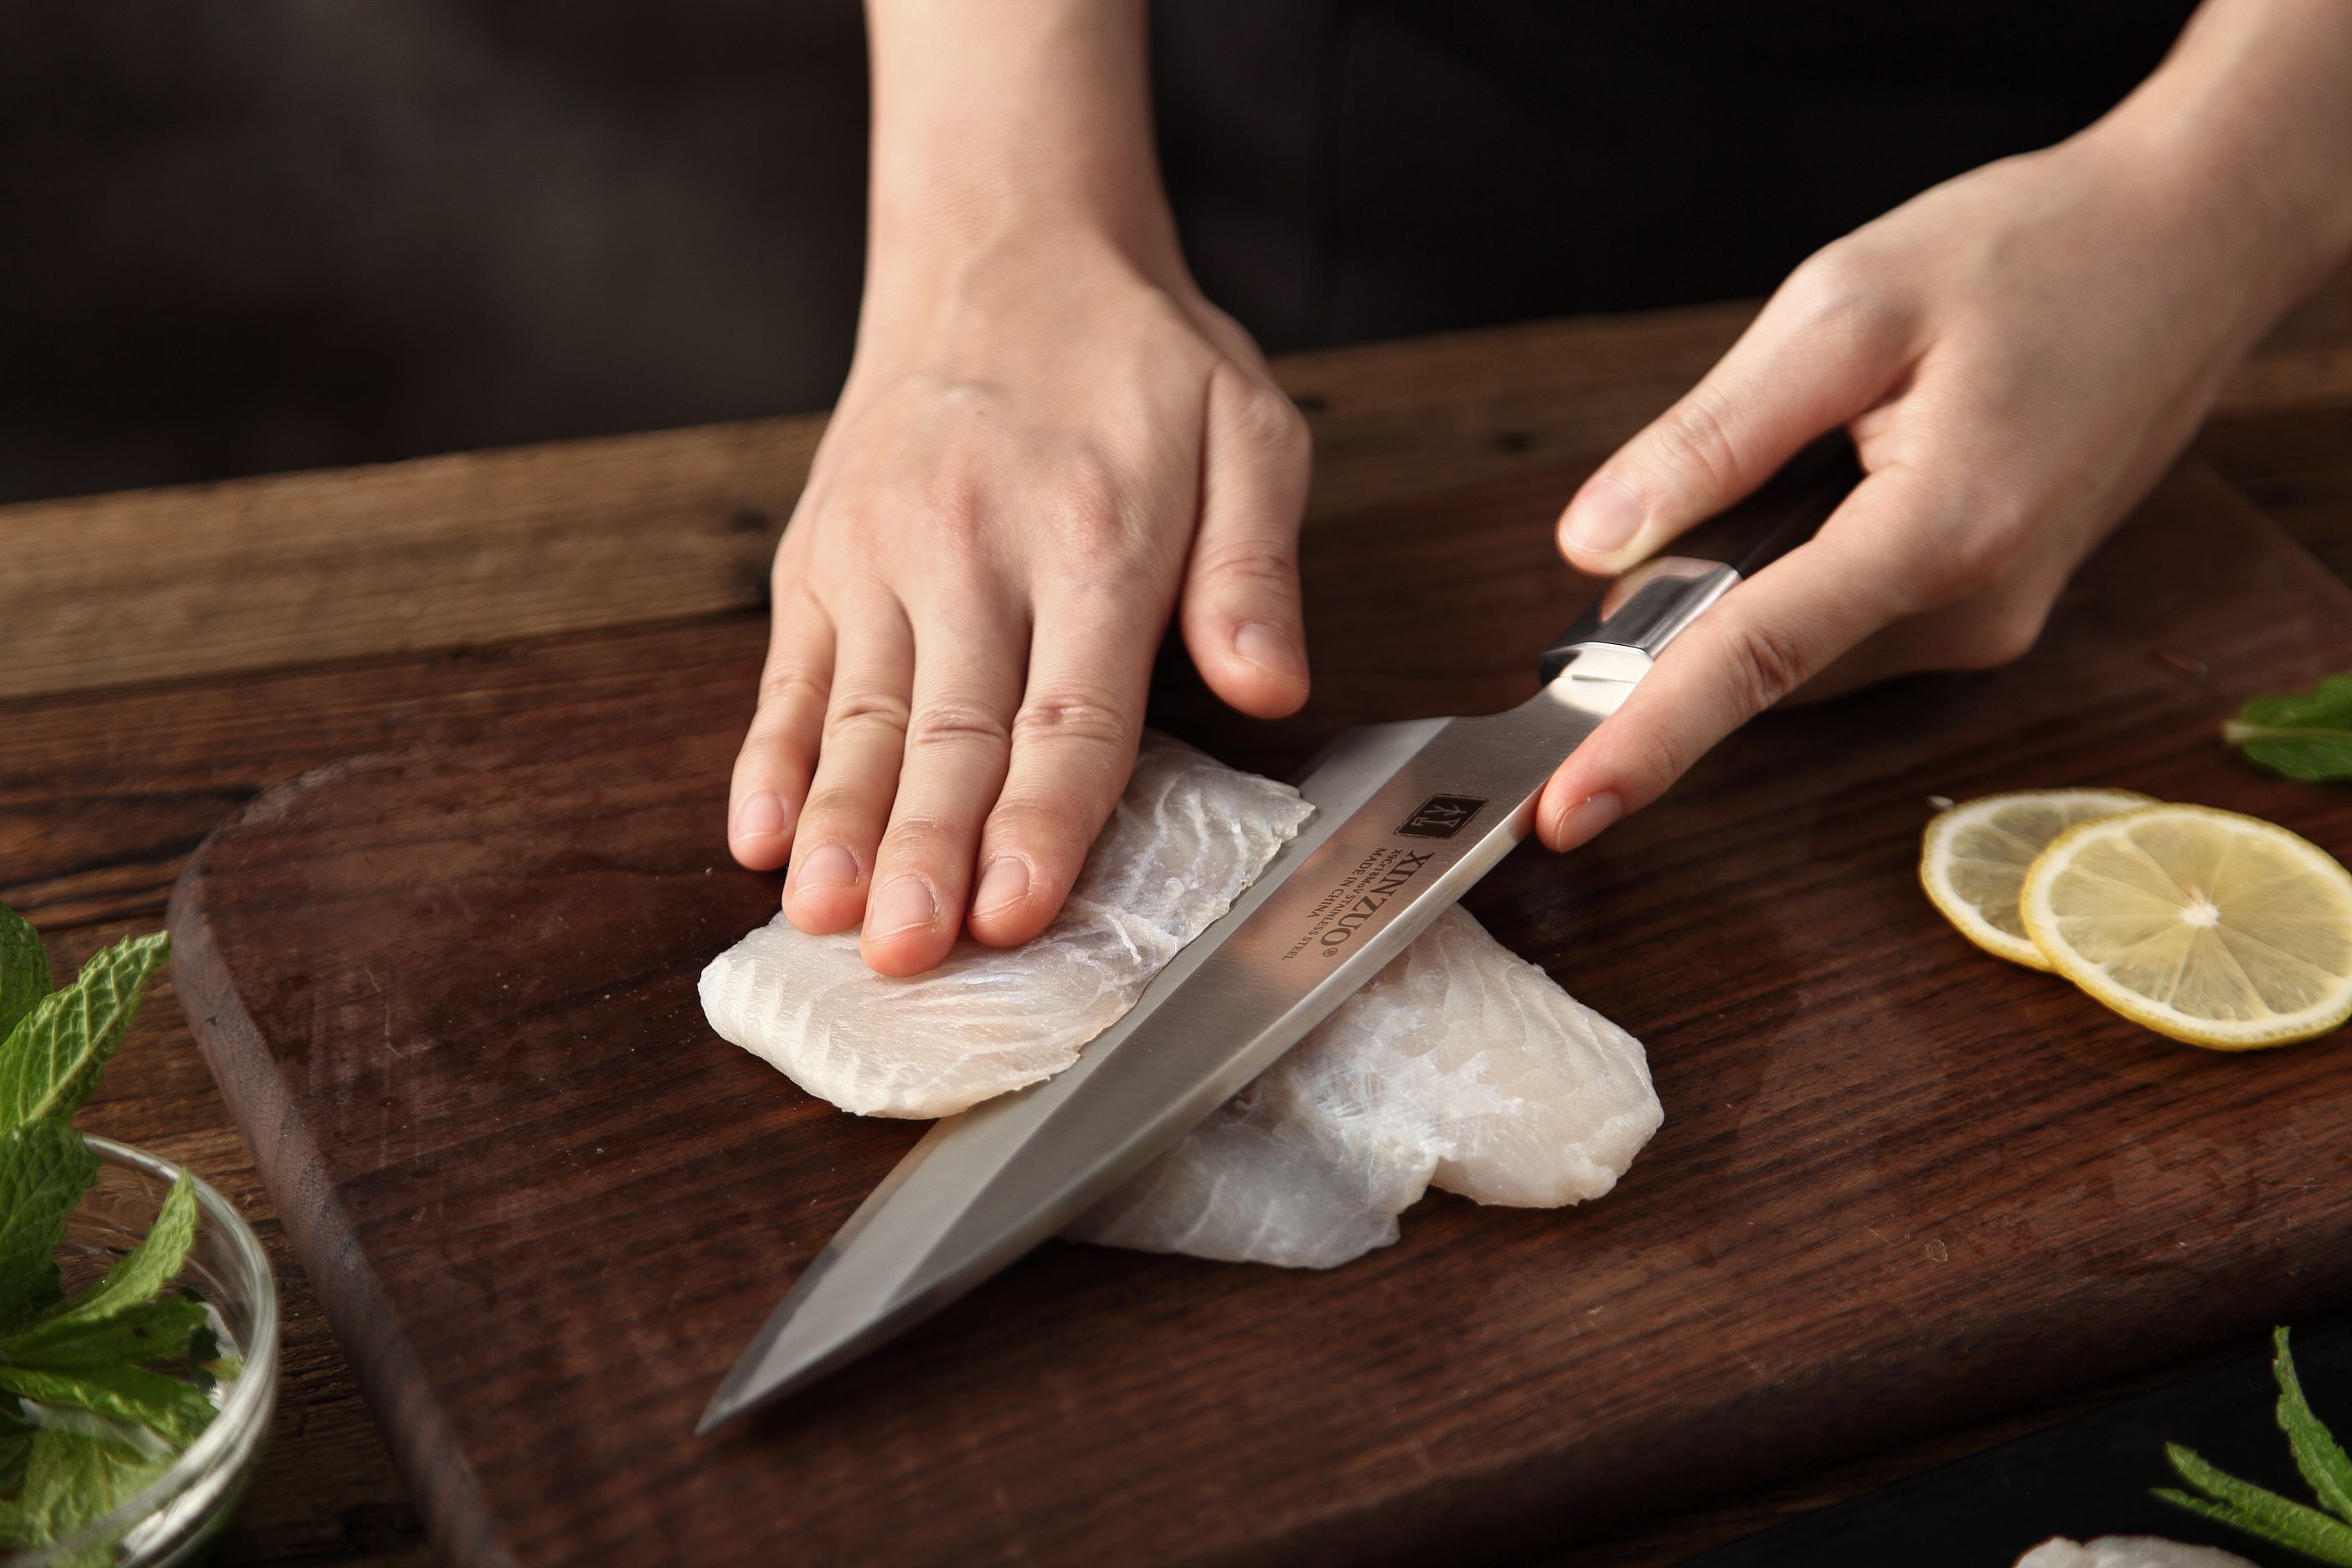 Nůž XinZuo Zhen Deba krájení rybího masa